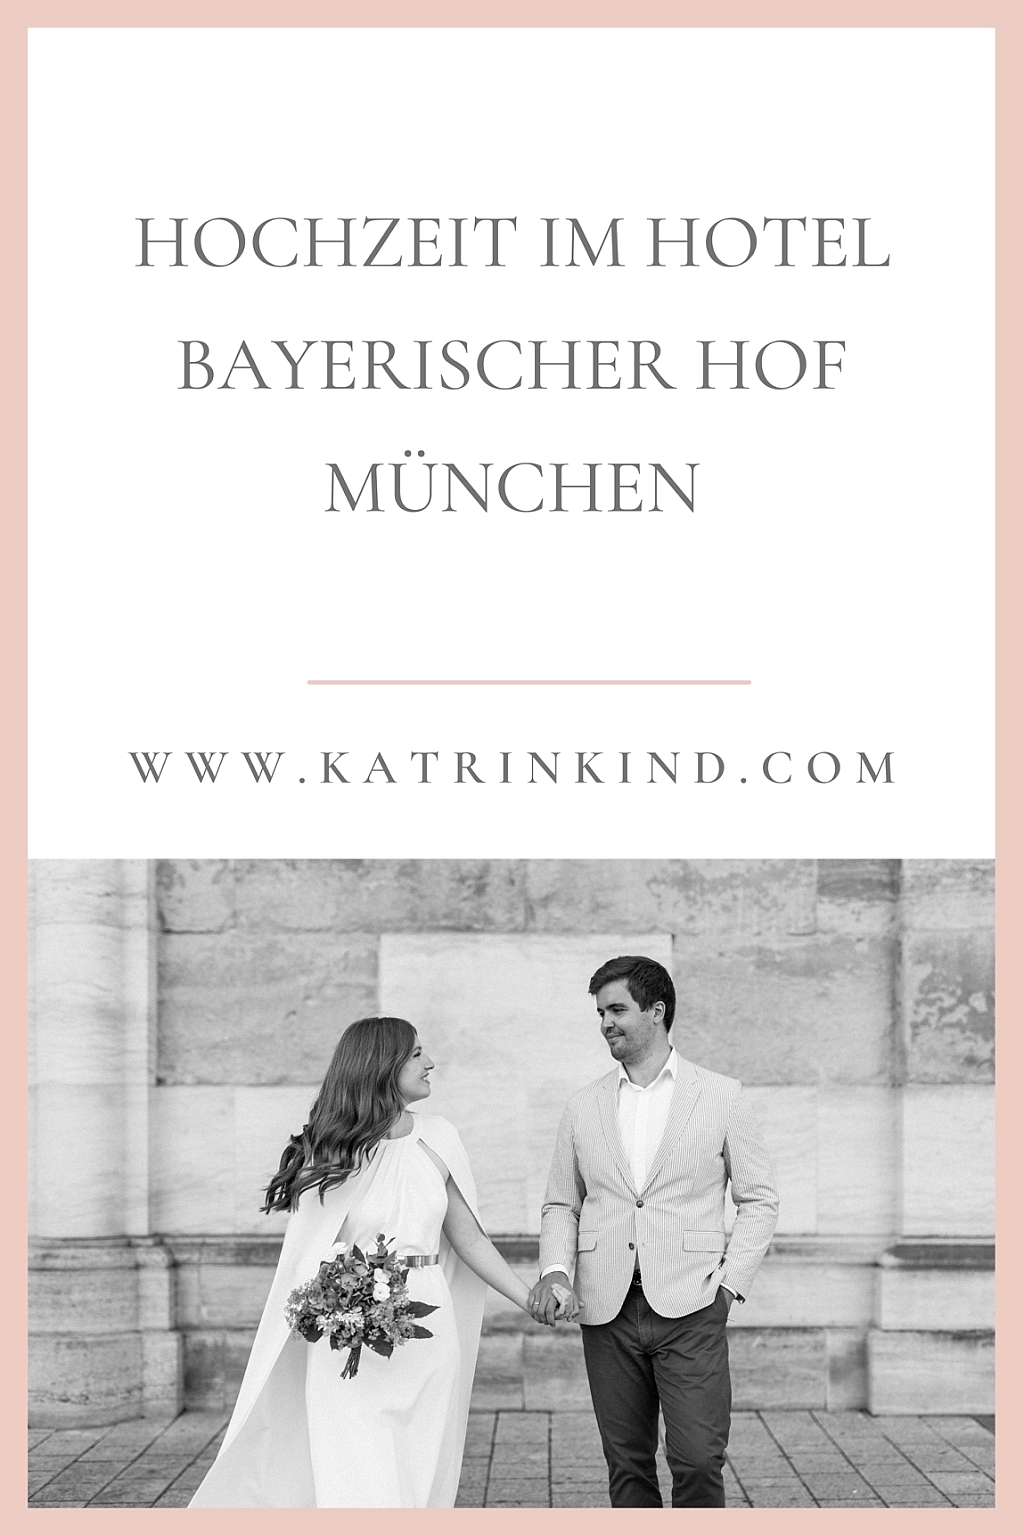 Hochzeit im Hotel Bayerischer Hof München